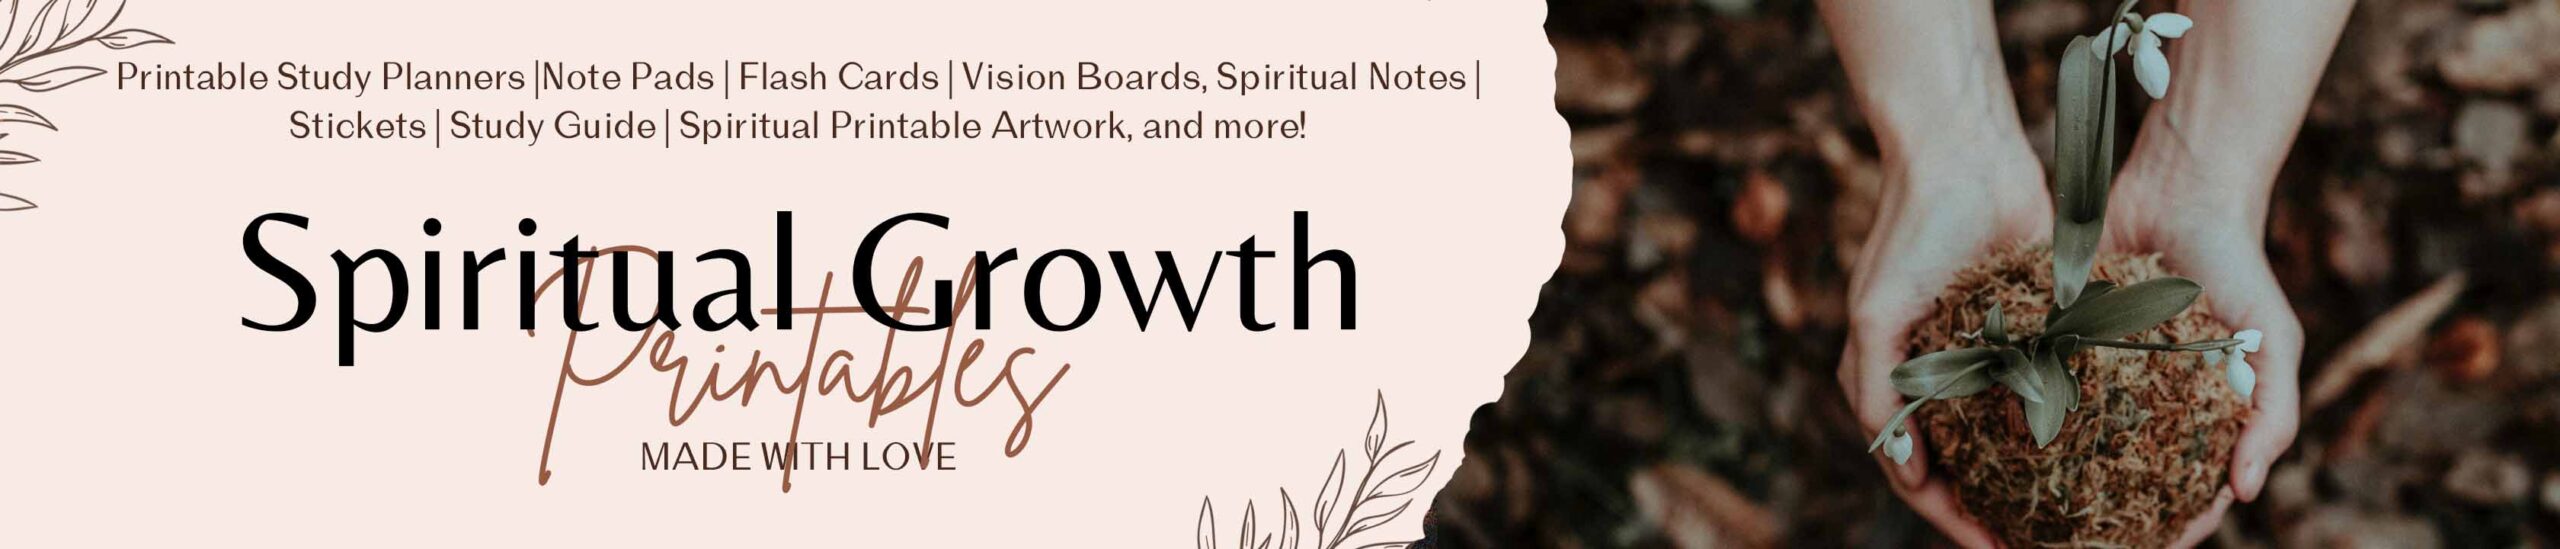 Spiritual Growth Printables